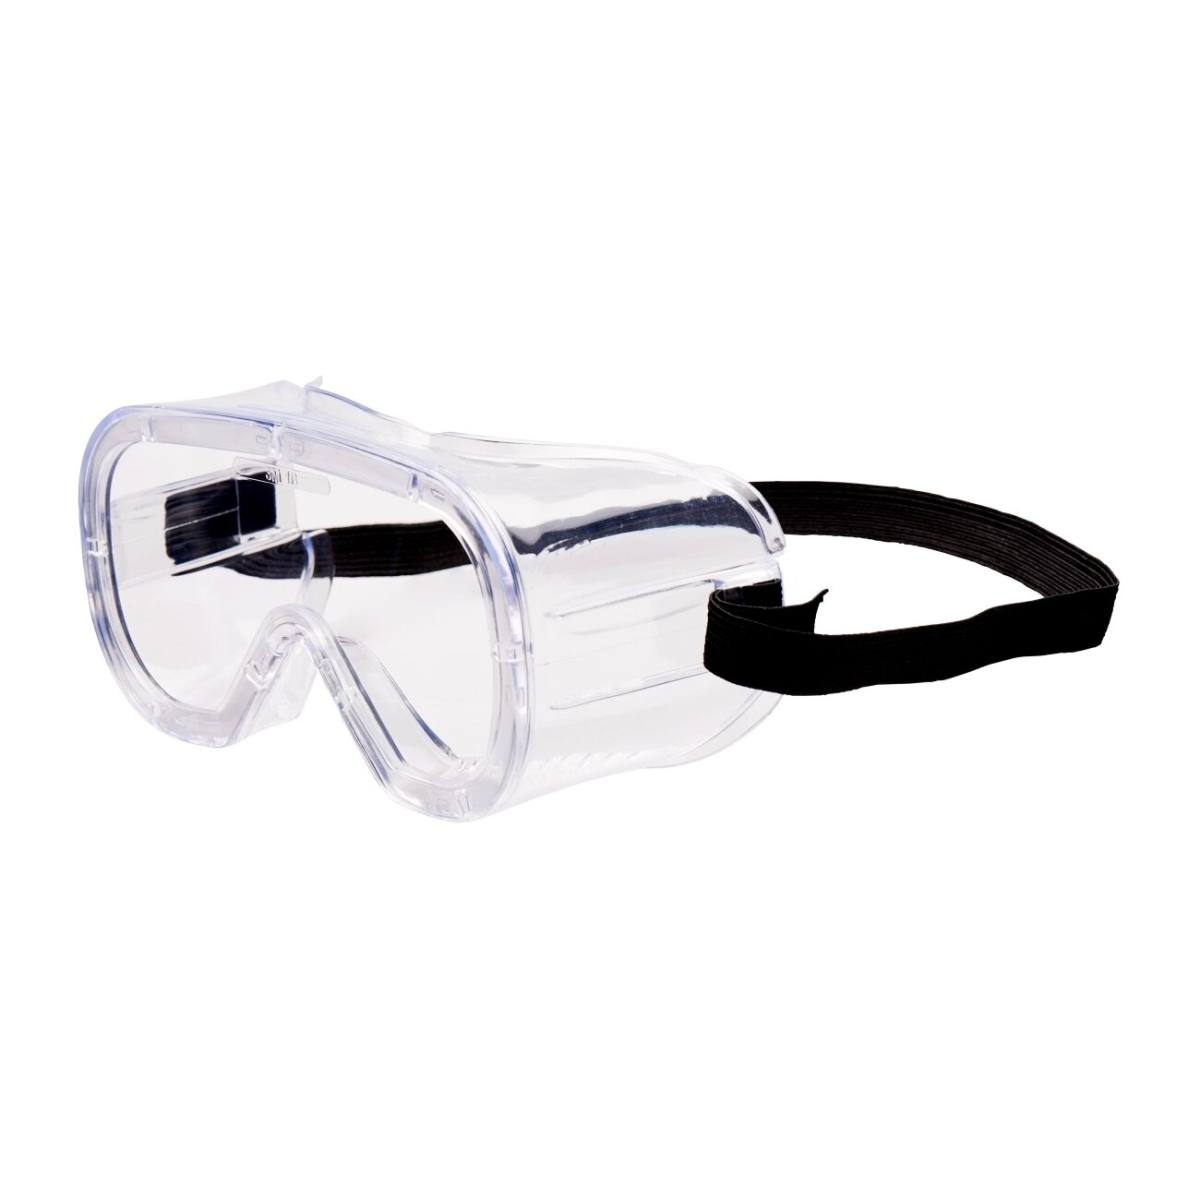 3M Full-vision bril Budget Bud4800 UV, PC, helder, indirecte ventilatie